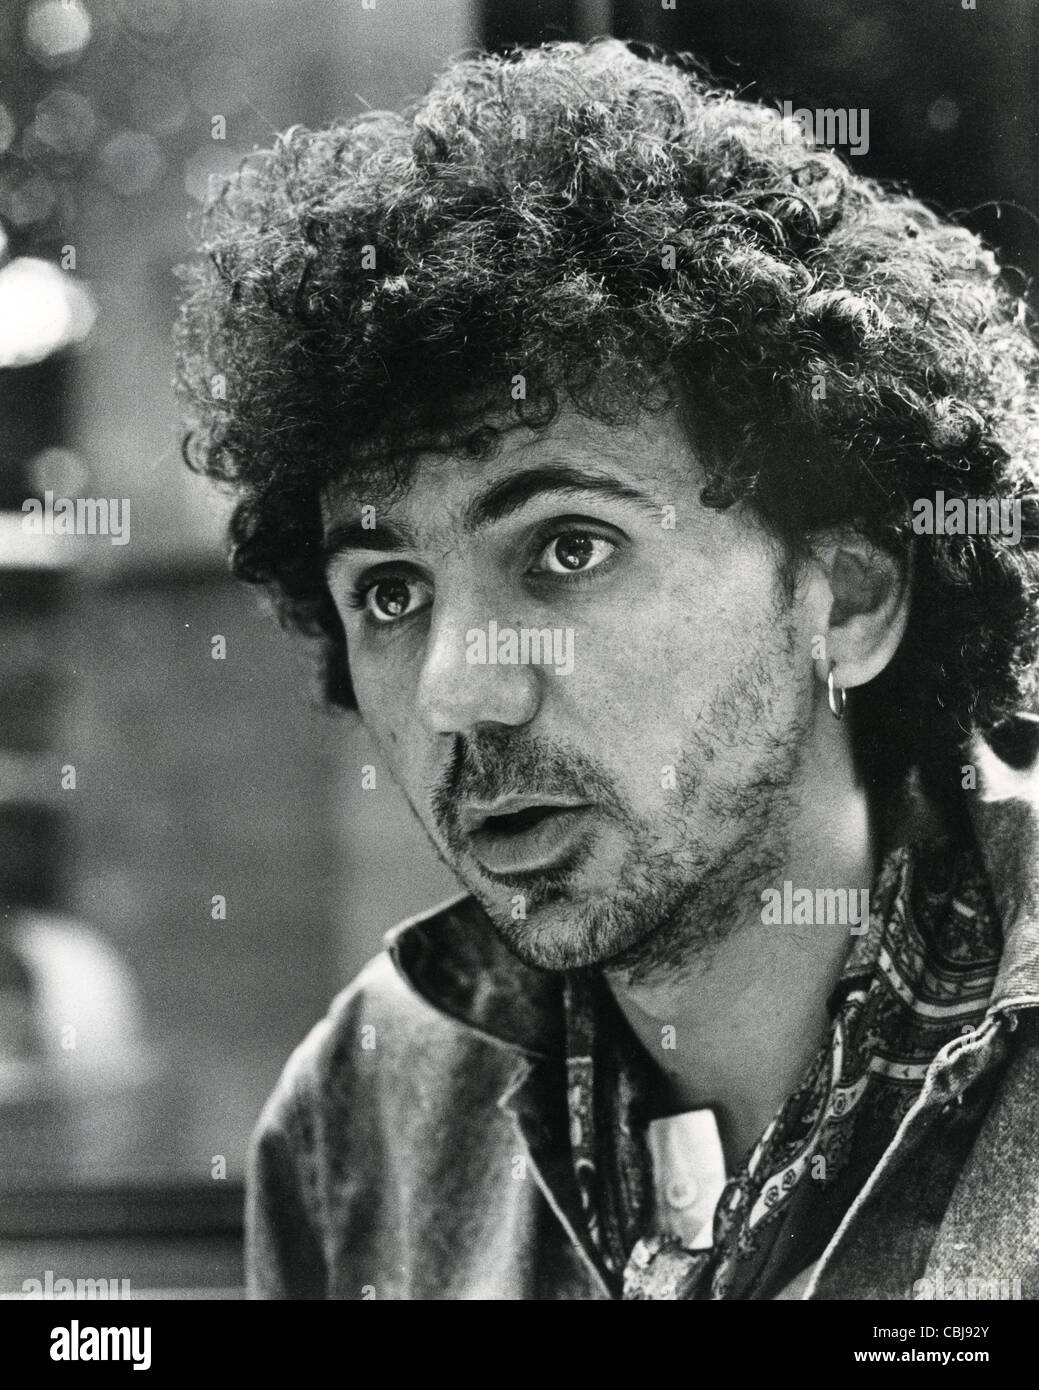 DEXY es MIDNIGHT RUNNERS britische Popgruppe Frontmann Kevin Rowland im Jahr 1982. Foto Laurens van Houten Stockfoto